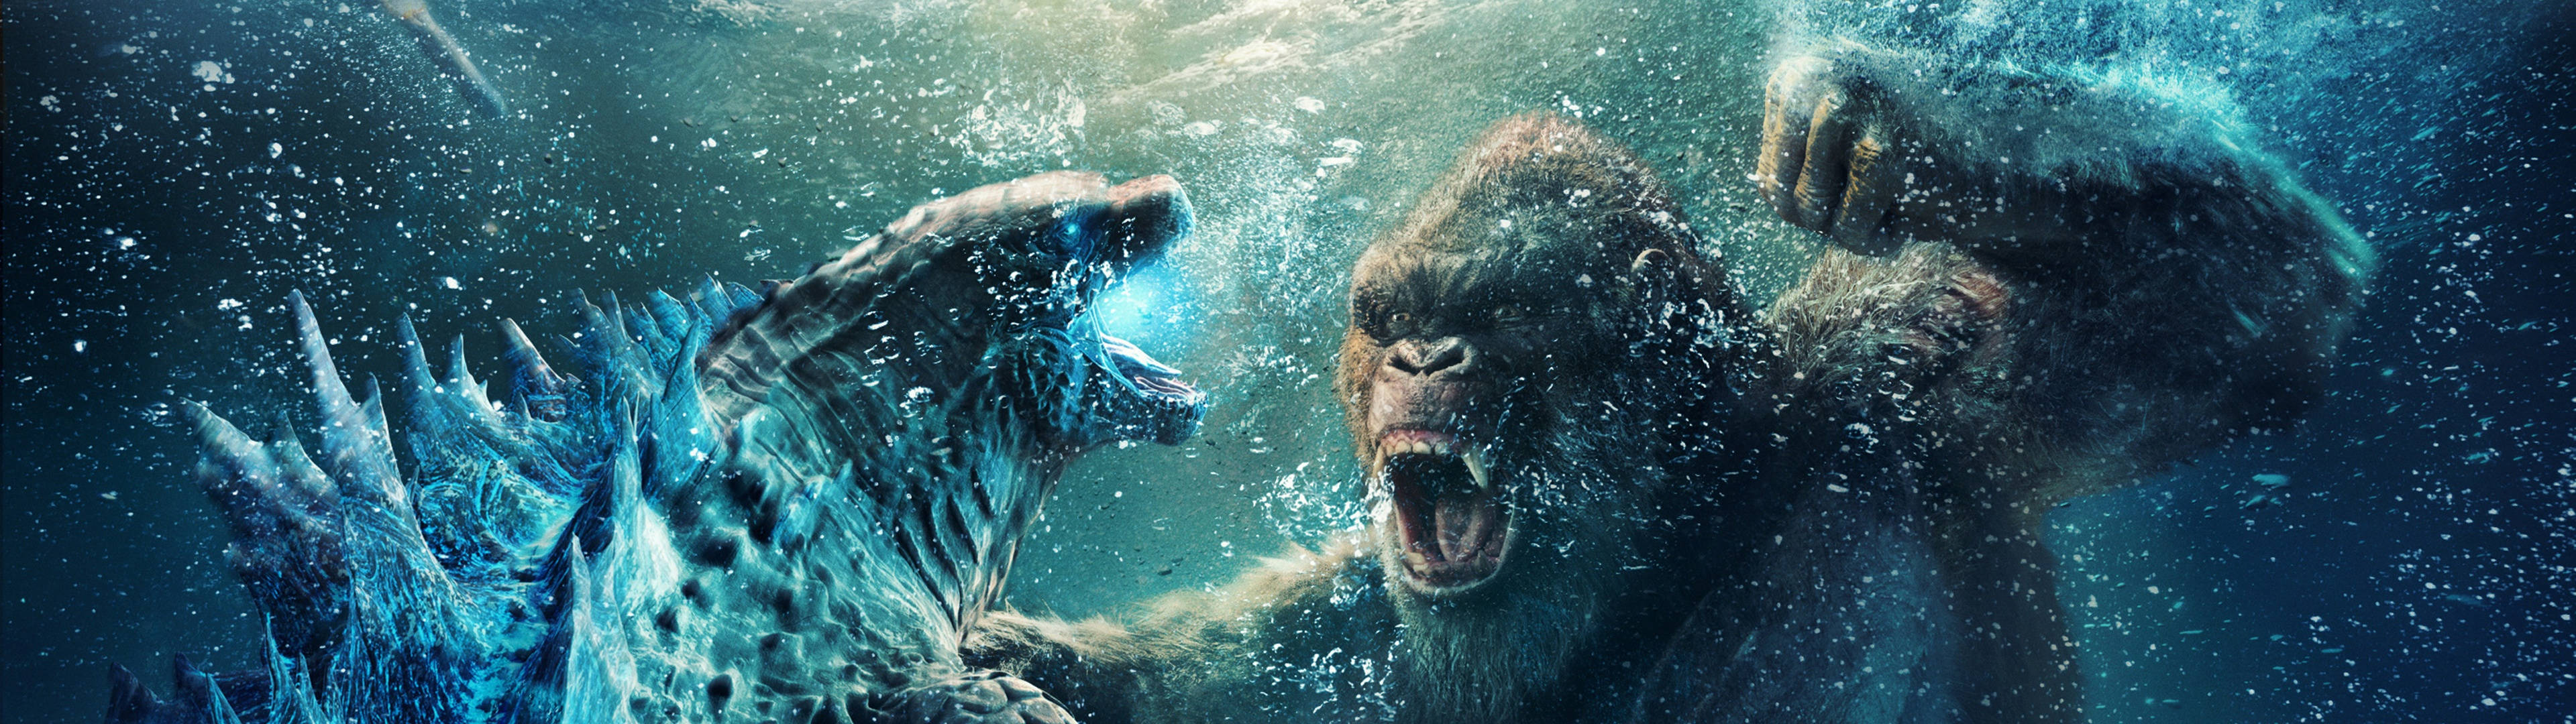 Godzilla mod King Kong - HD 720p Wallpaper